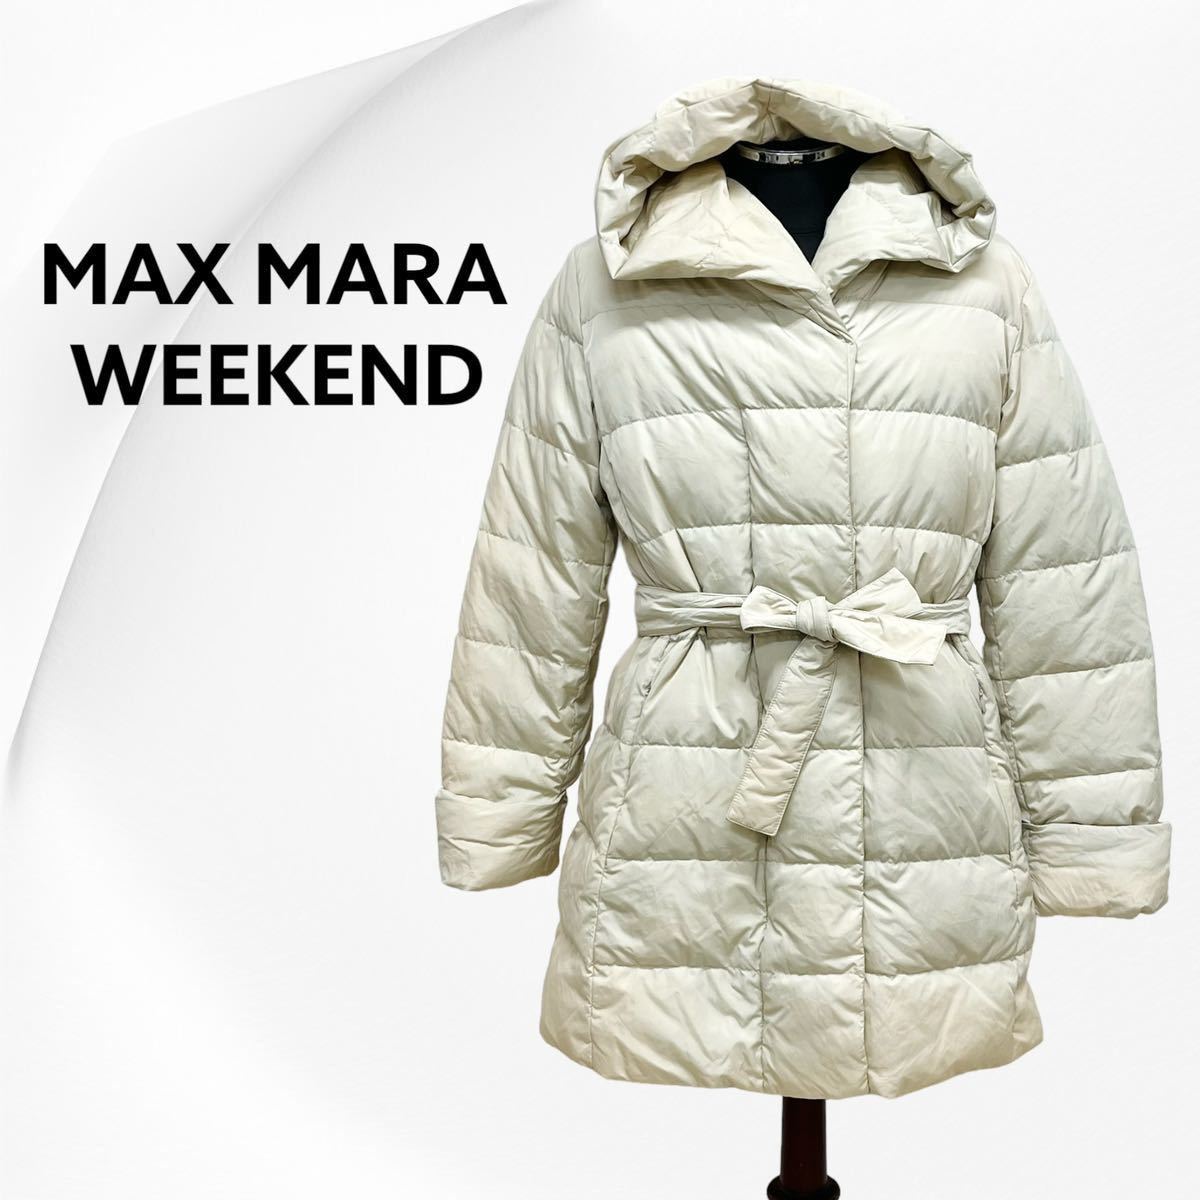 Max Mara weekendline